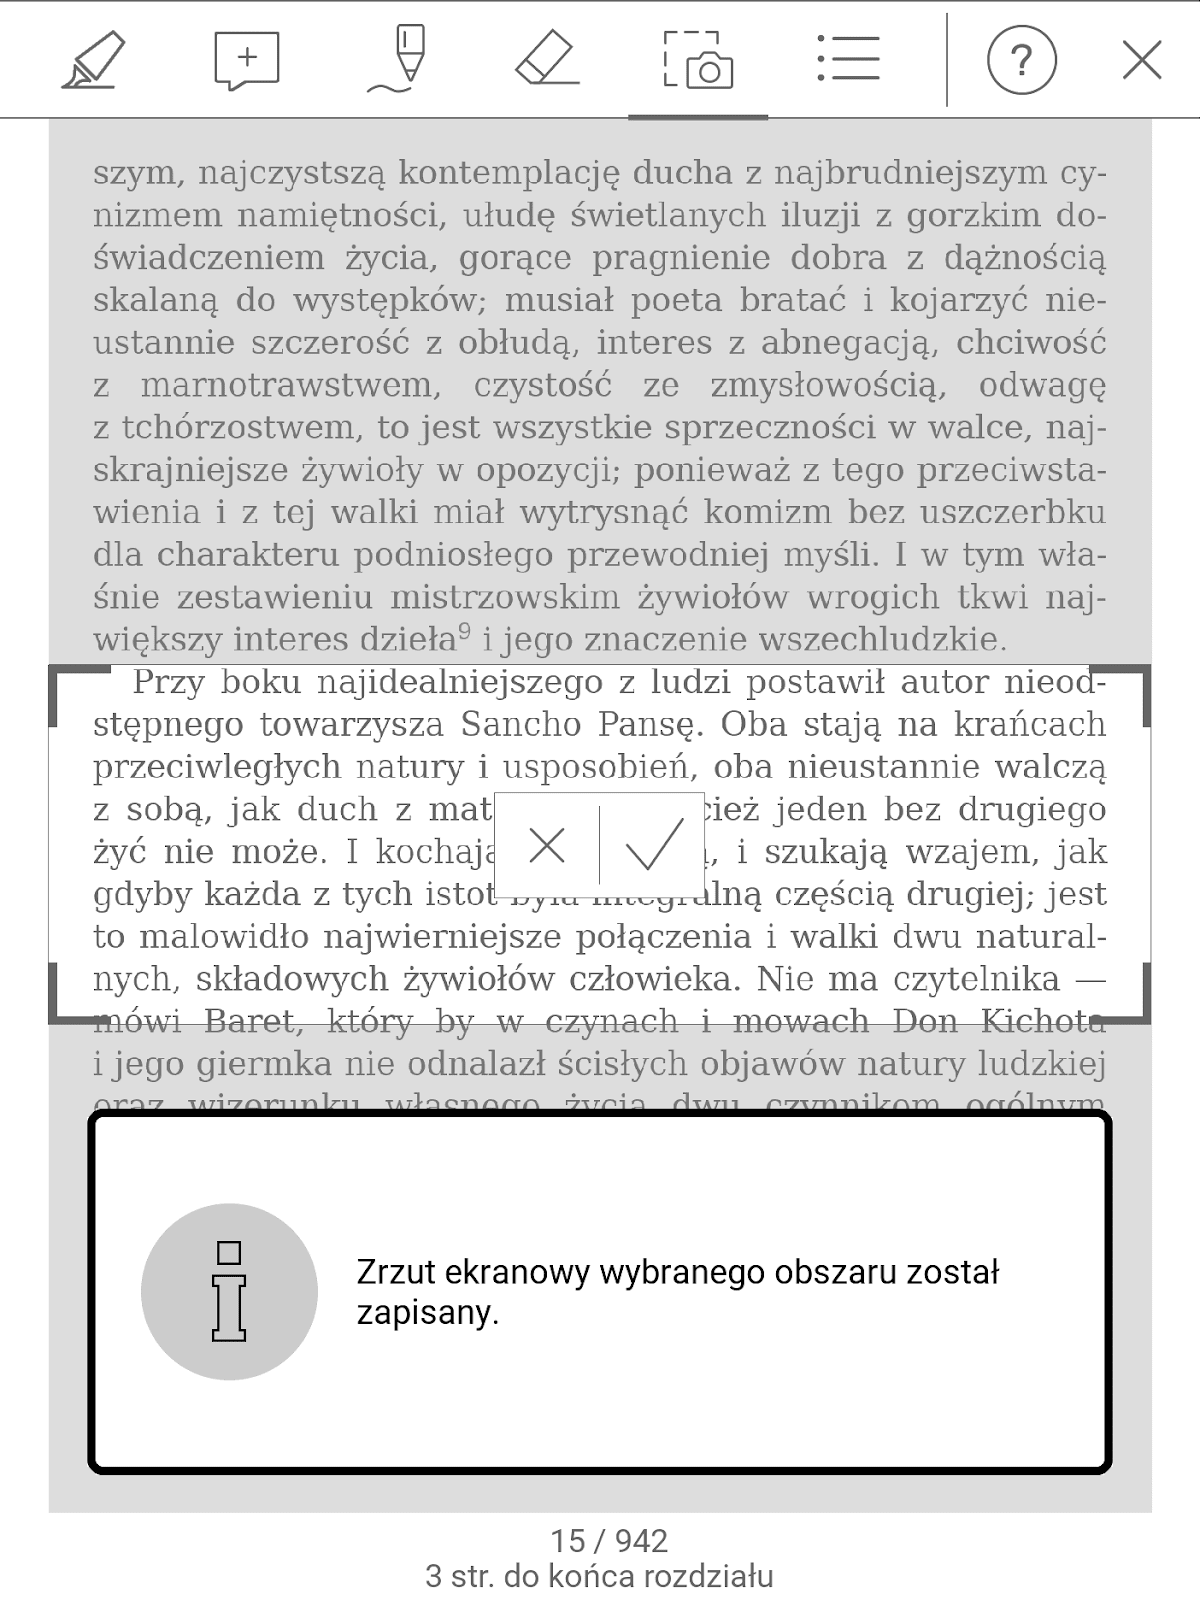 PocketBook InkPad 4 – zapisywanie fragmentu strony jako zrzut ekranu